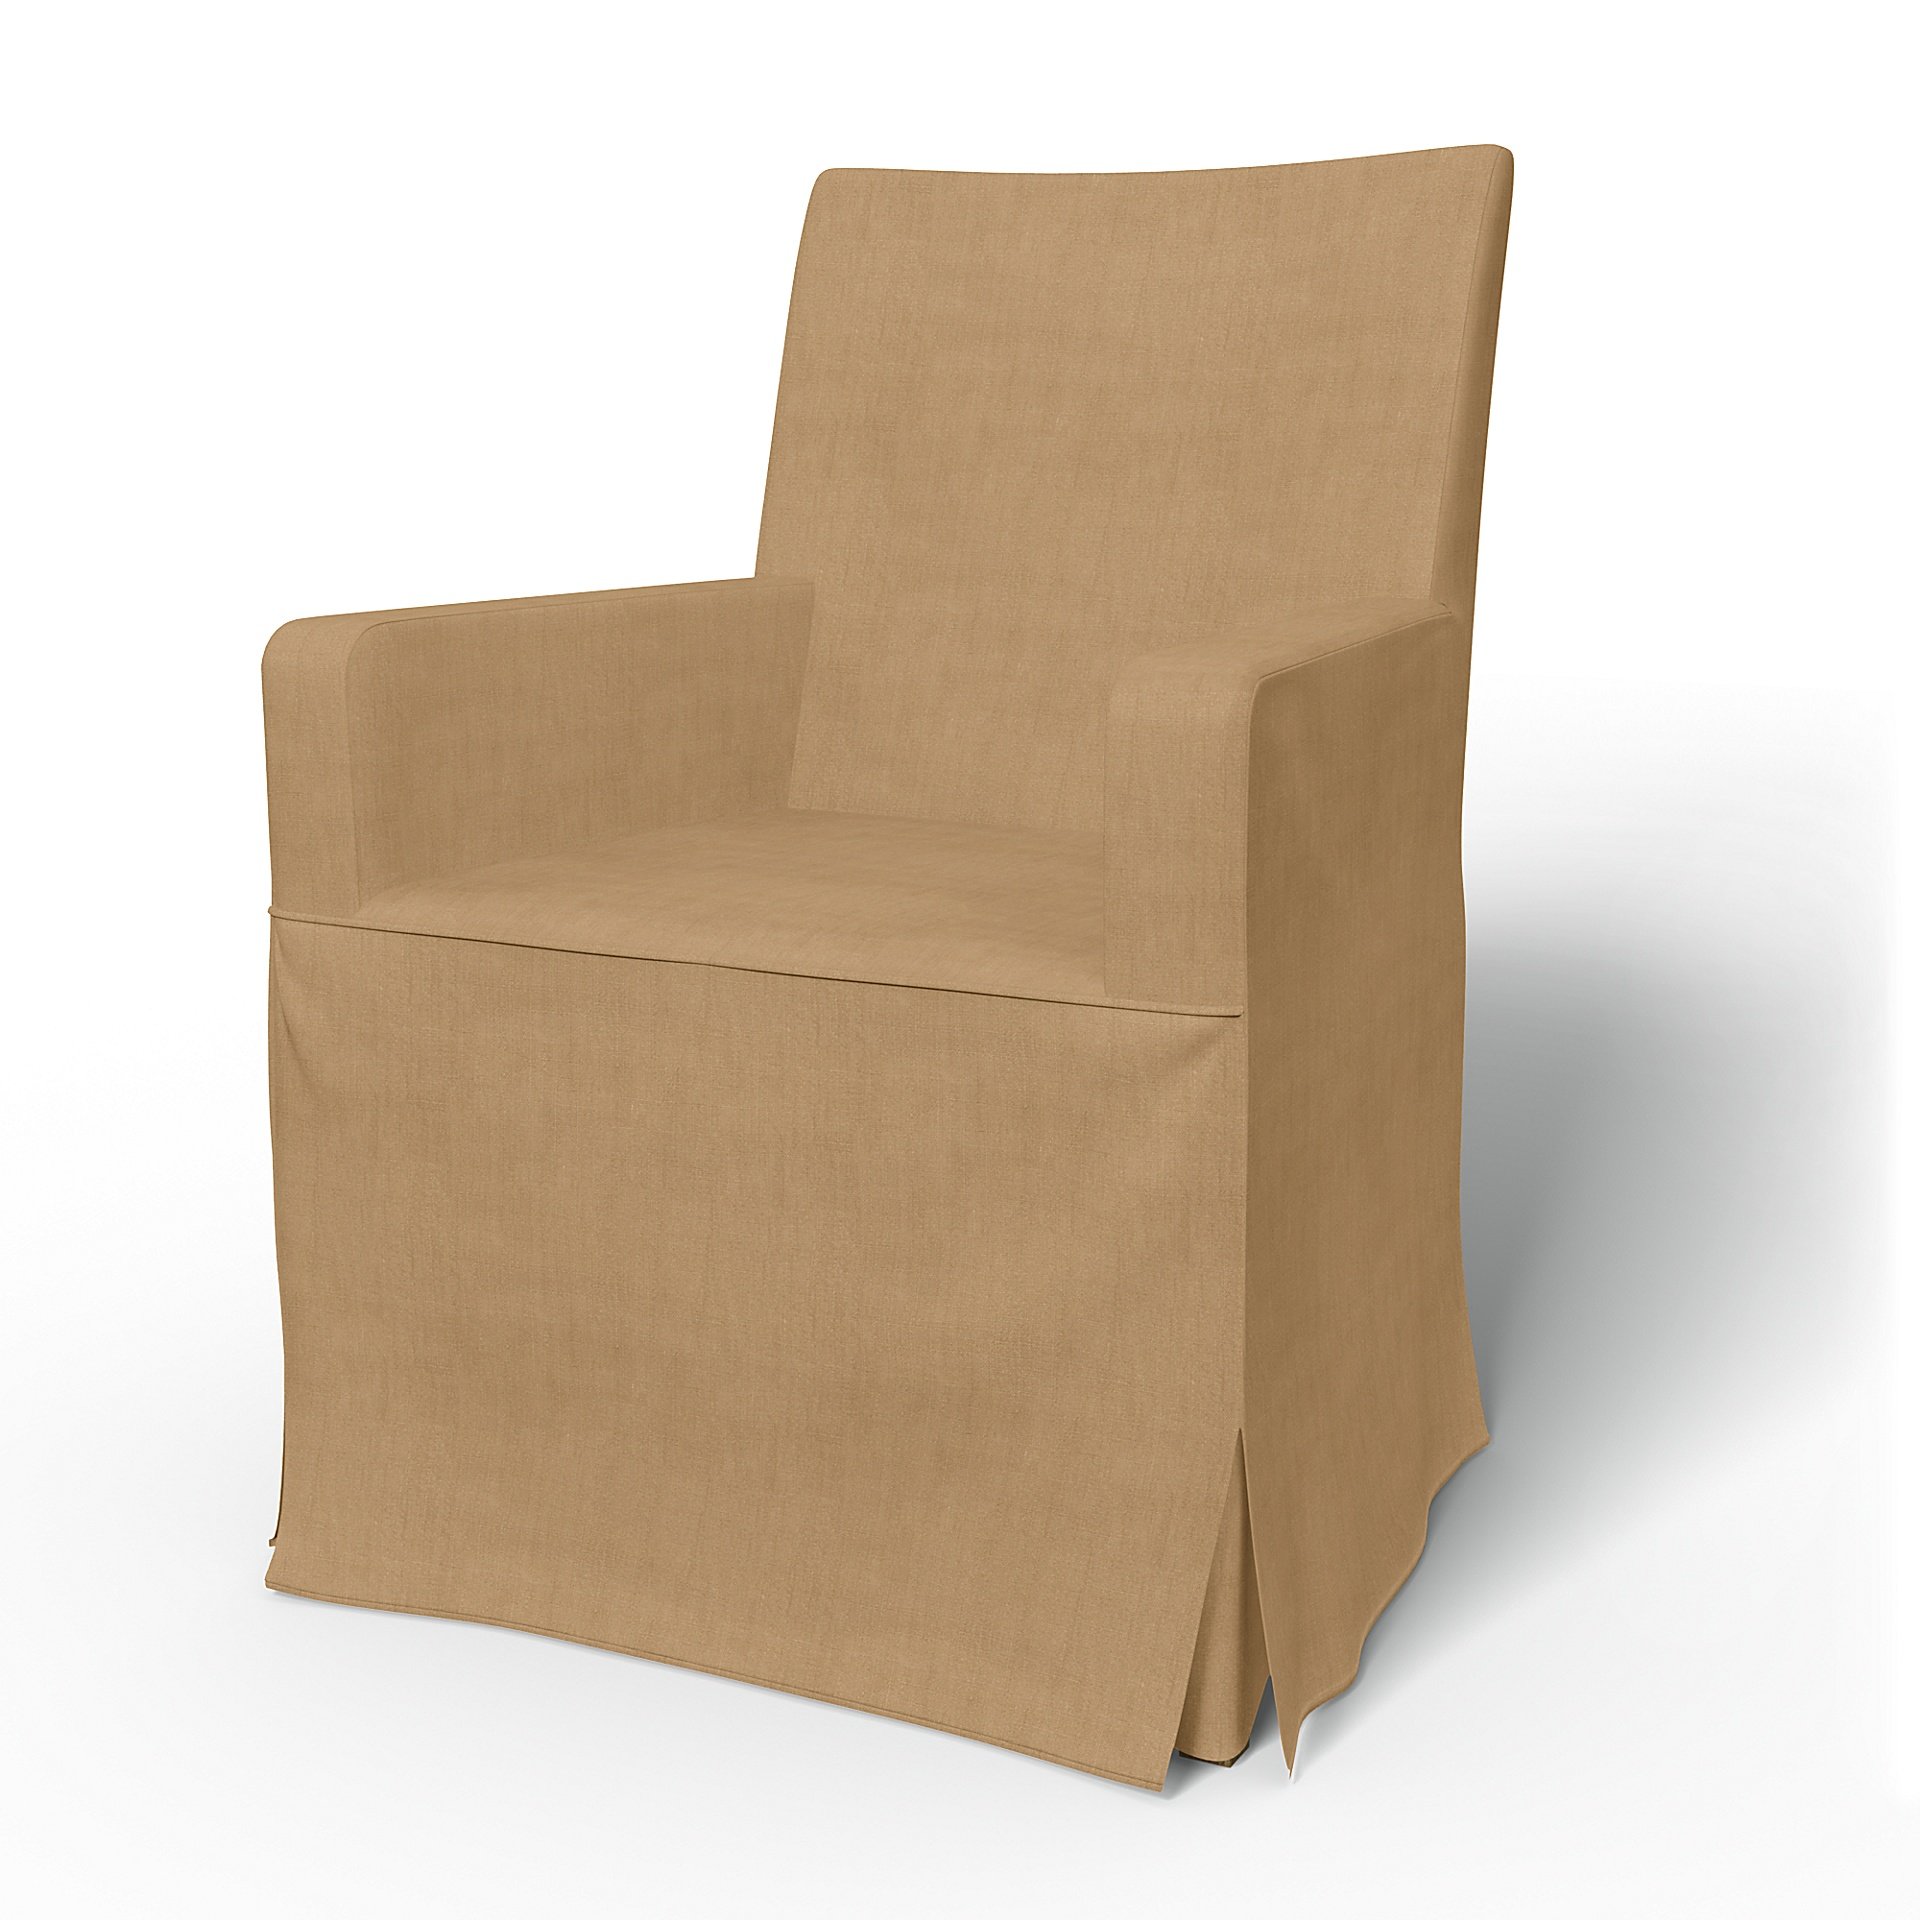 IKEA - Henriksdal, Chair cover w/ armrests, long skirt box pleat, Hemp, Linen - Bemz